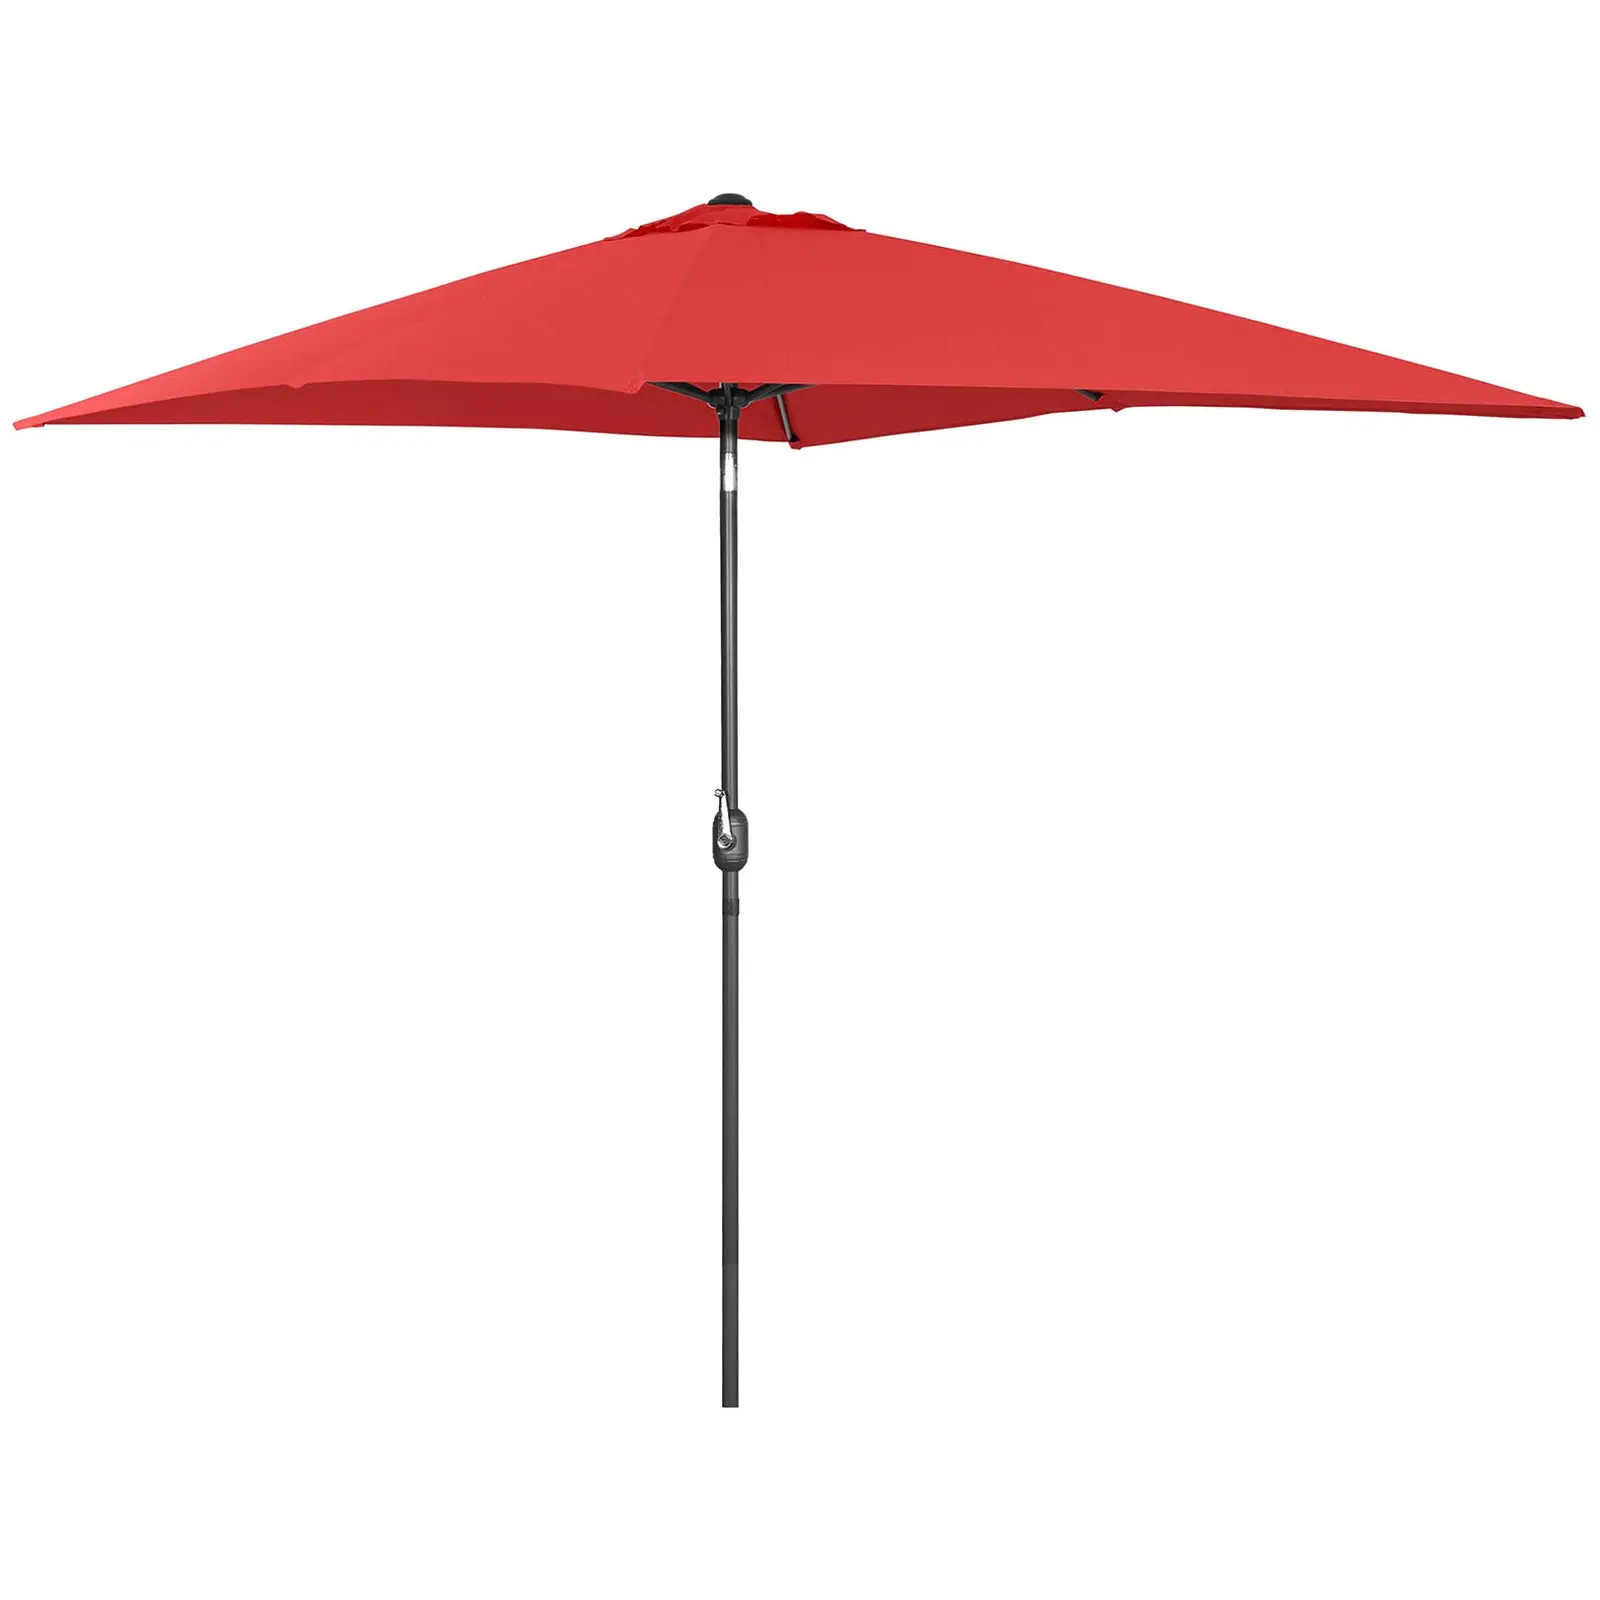 B-termék Nagy napernyő - piros - szögletes - 200 x 300 cm - dönthető